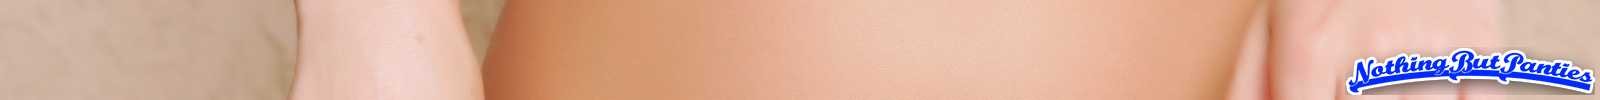 Kayden slip di cotone rosa in topless fuori
 #72635634